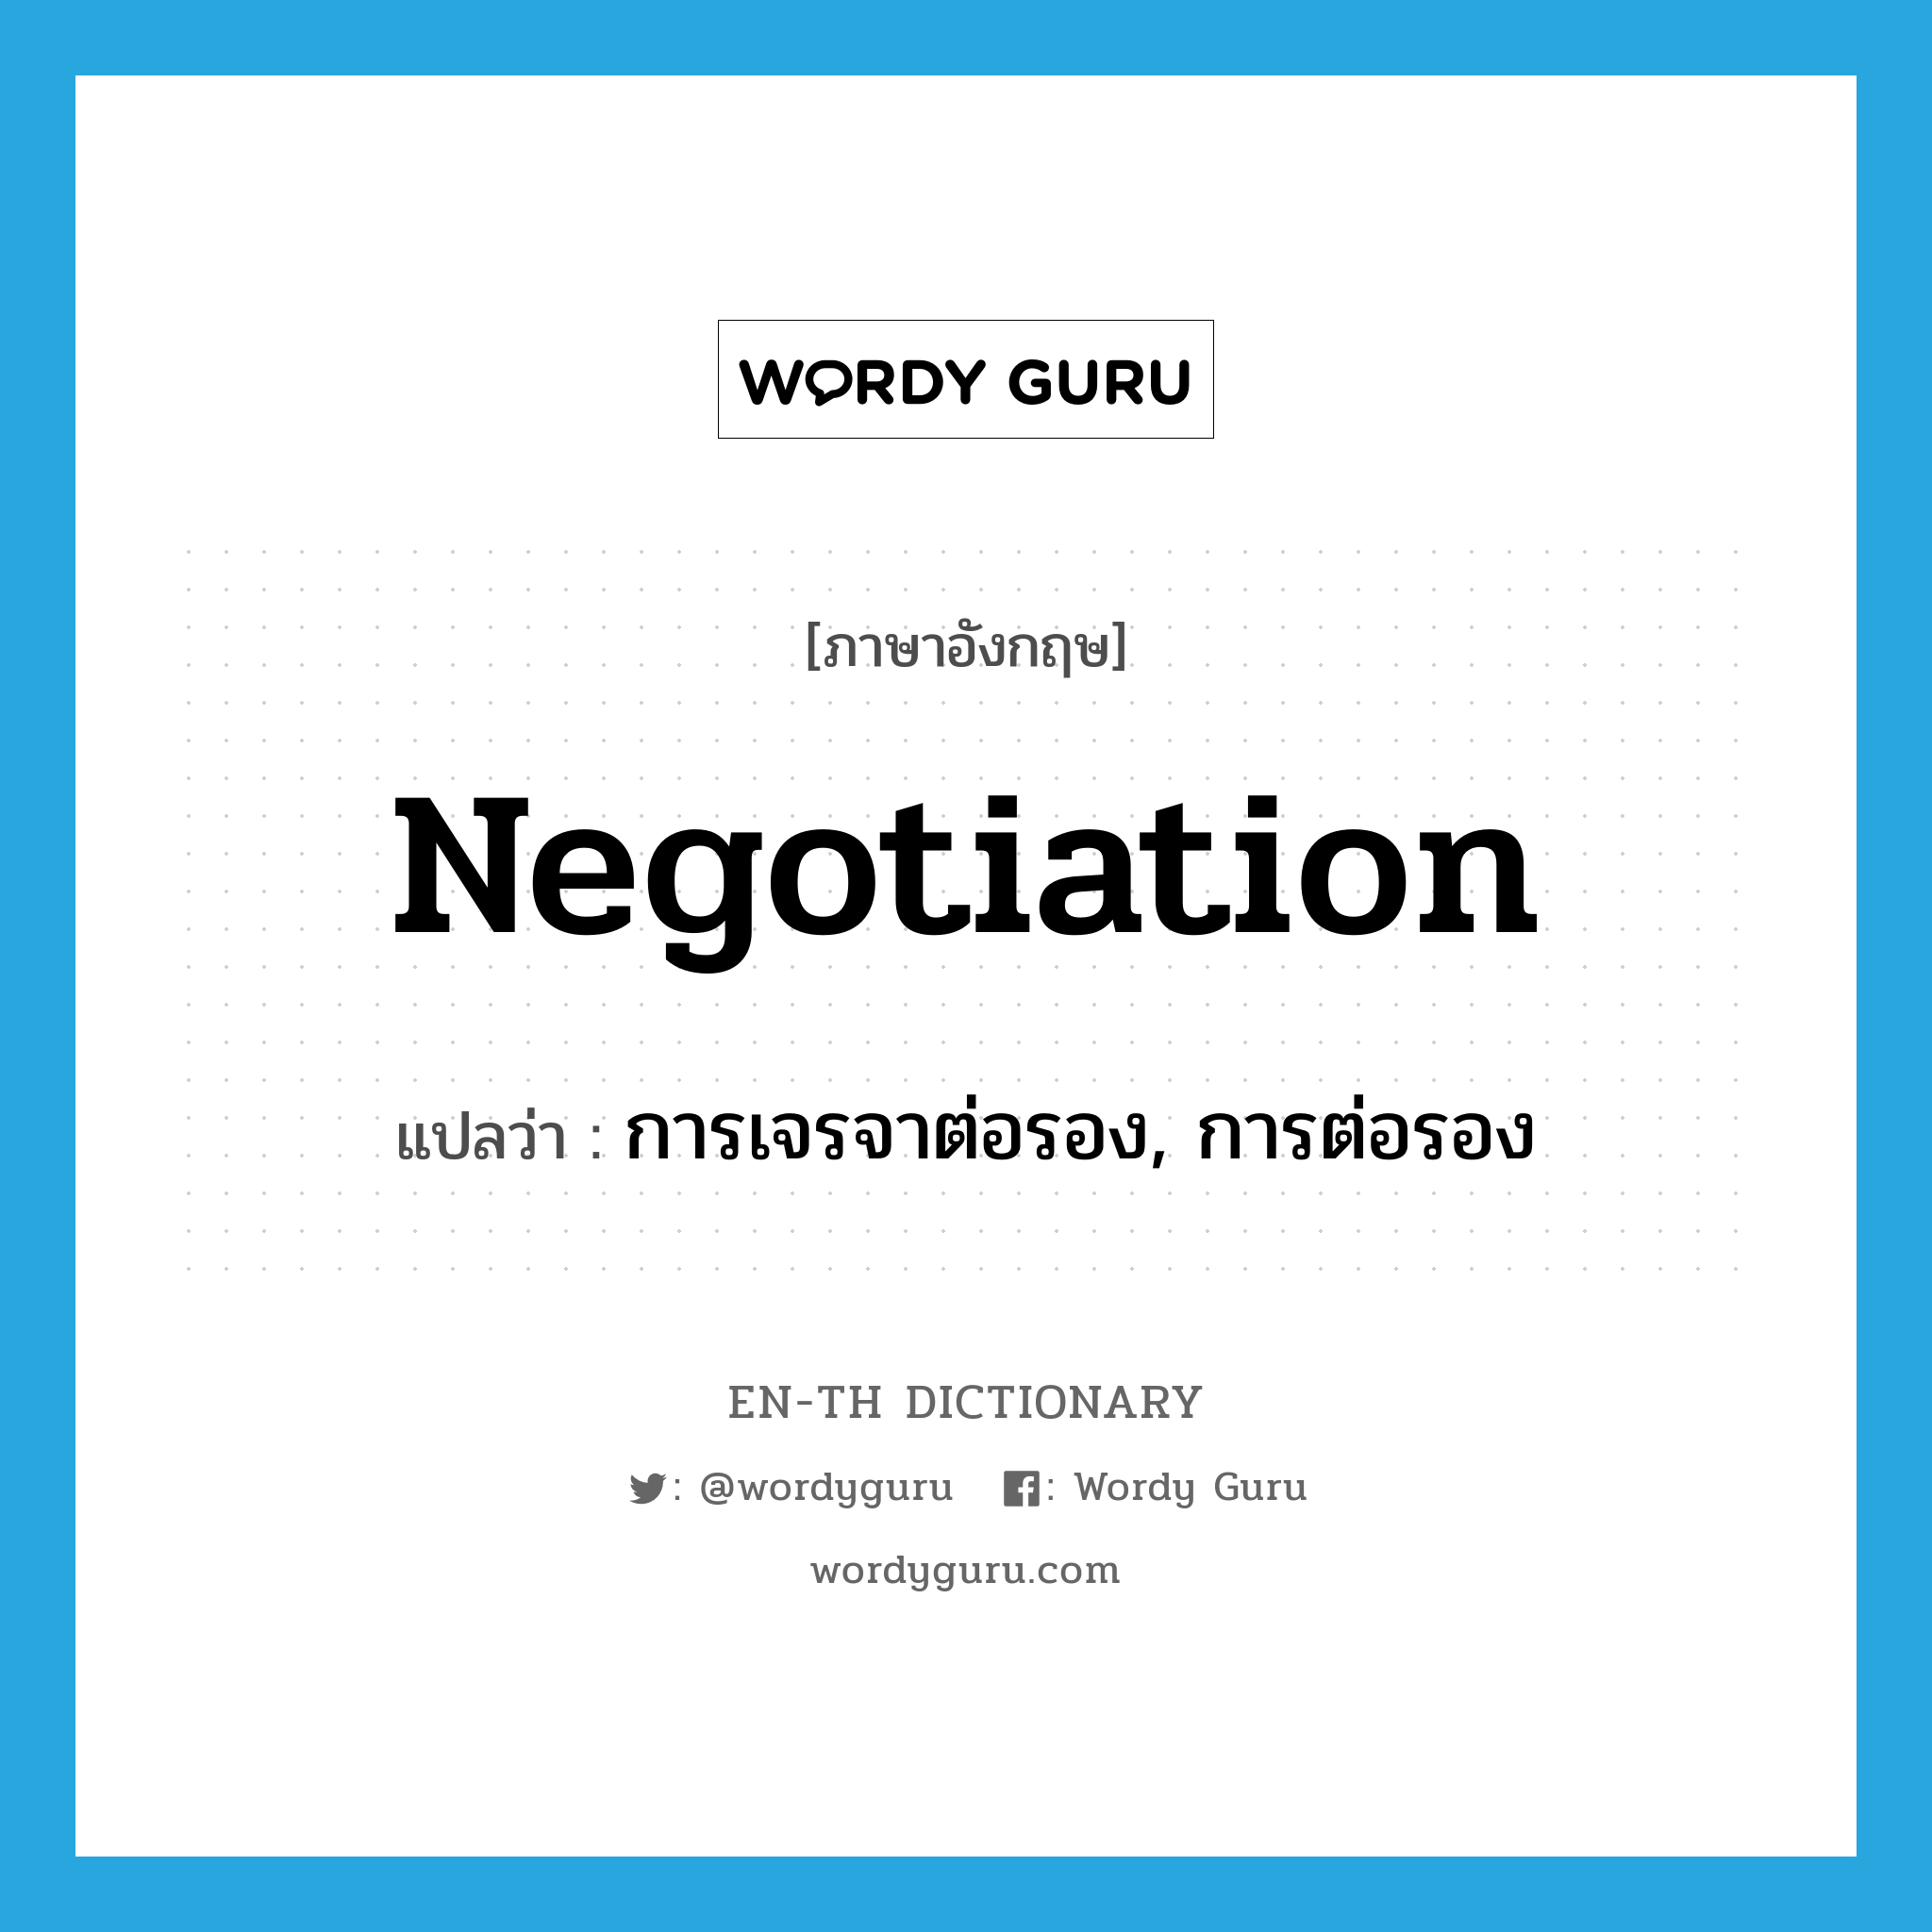 การเจรจาต่อรอง, การต่อรอง ภาษาอังกฤษ?, คำศัพท์ภาษาอังกฤษ การเจรจาต่อรอง, การต่อรอง แปลว่า negotiation ประเภท N หมวด N